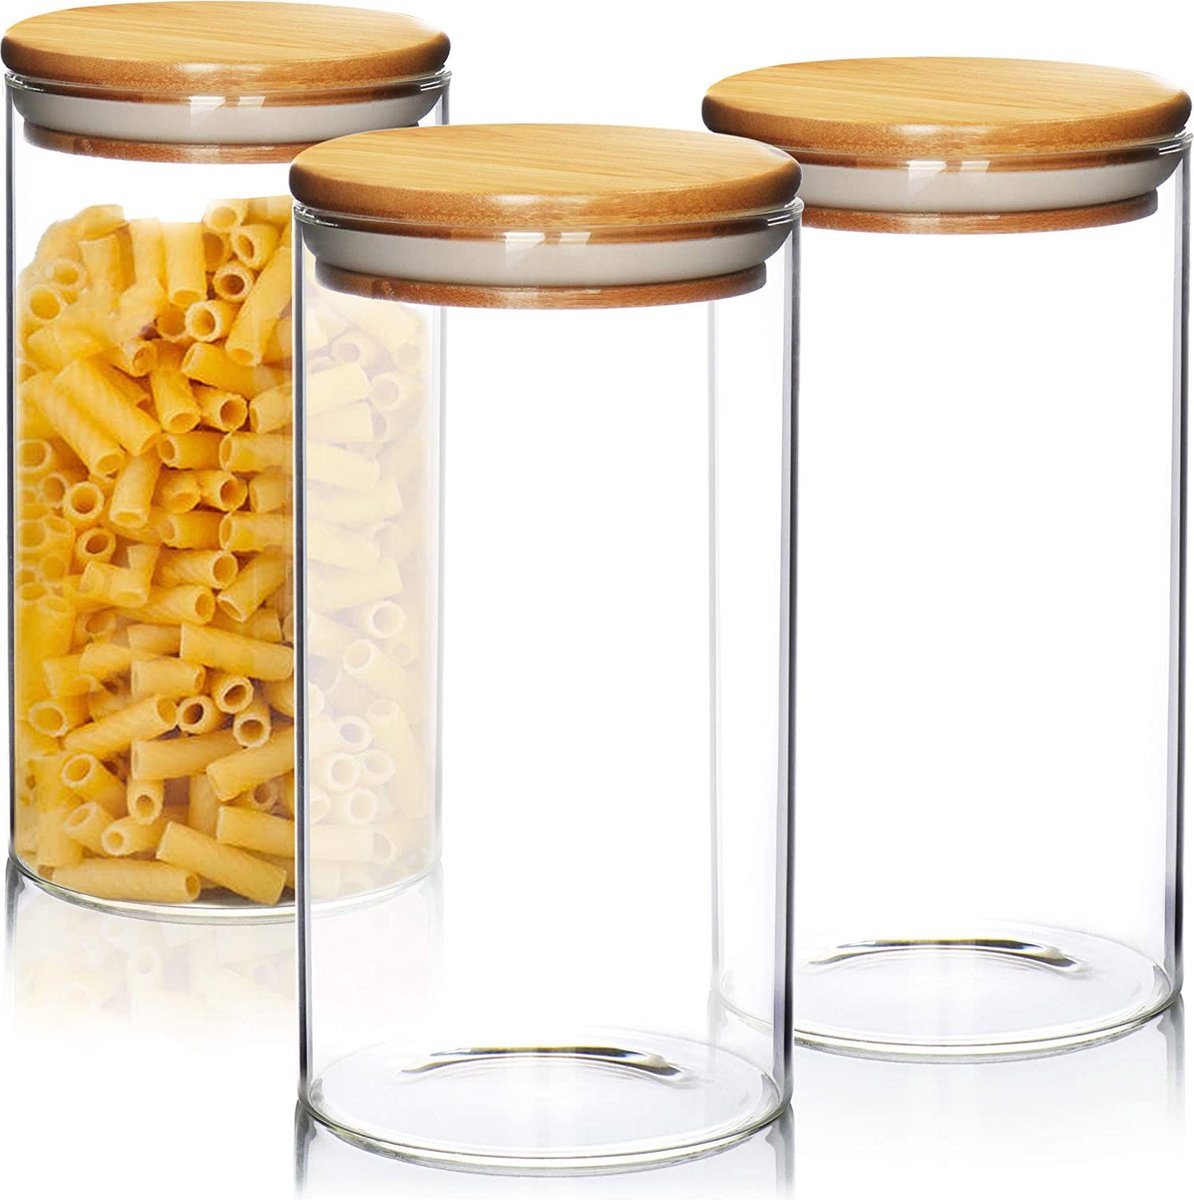 COM-FOUR® 3x voorraadpotten met bamboe deksel, luchtdichte herbruikbare glazen containers van borosilicaatglas, 1,3 liter (1,3 l - 3 stuks)